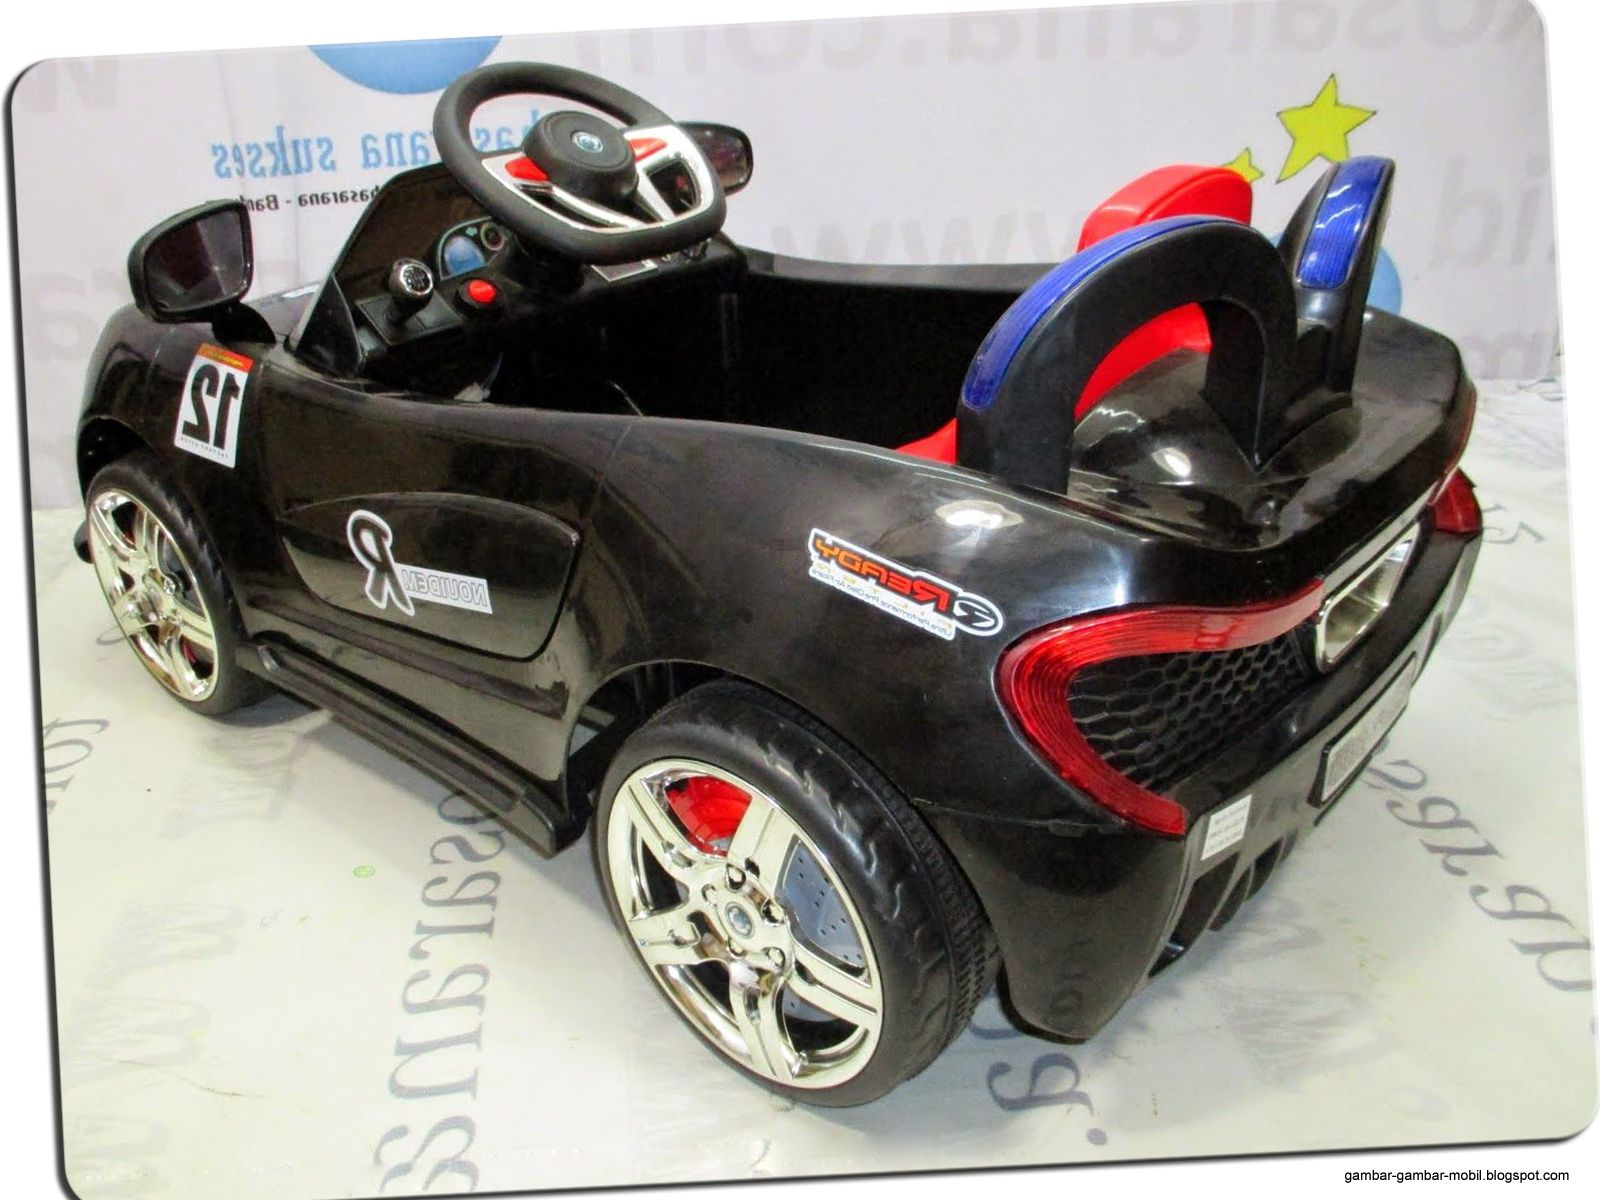  Mobil  Mainan  Anak  Yang  Bisa  Dinaiki  Gambar Gambar Mobil 